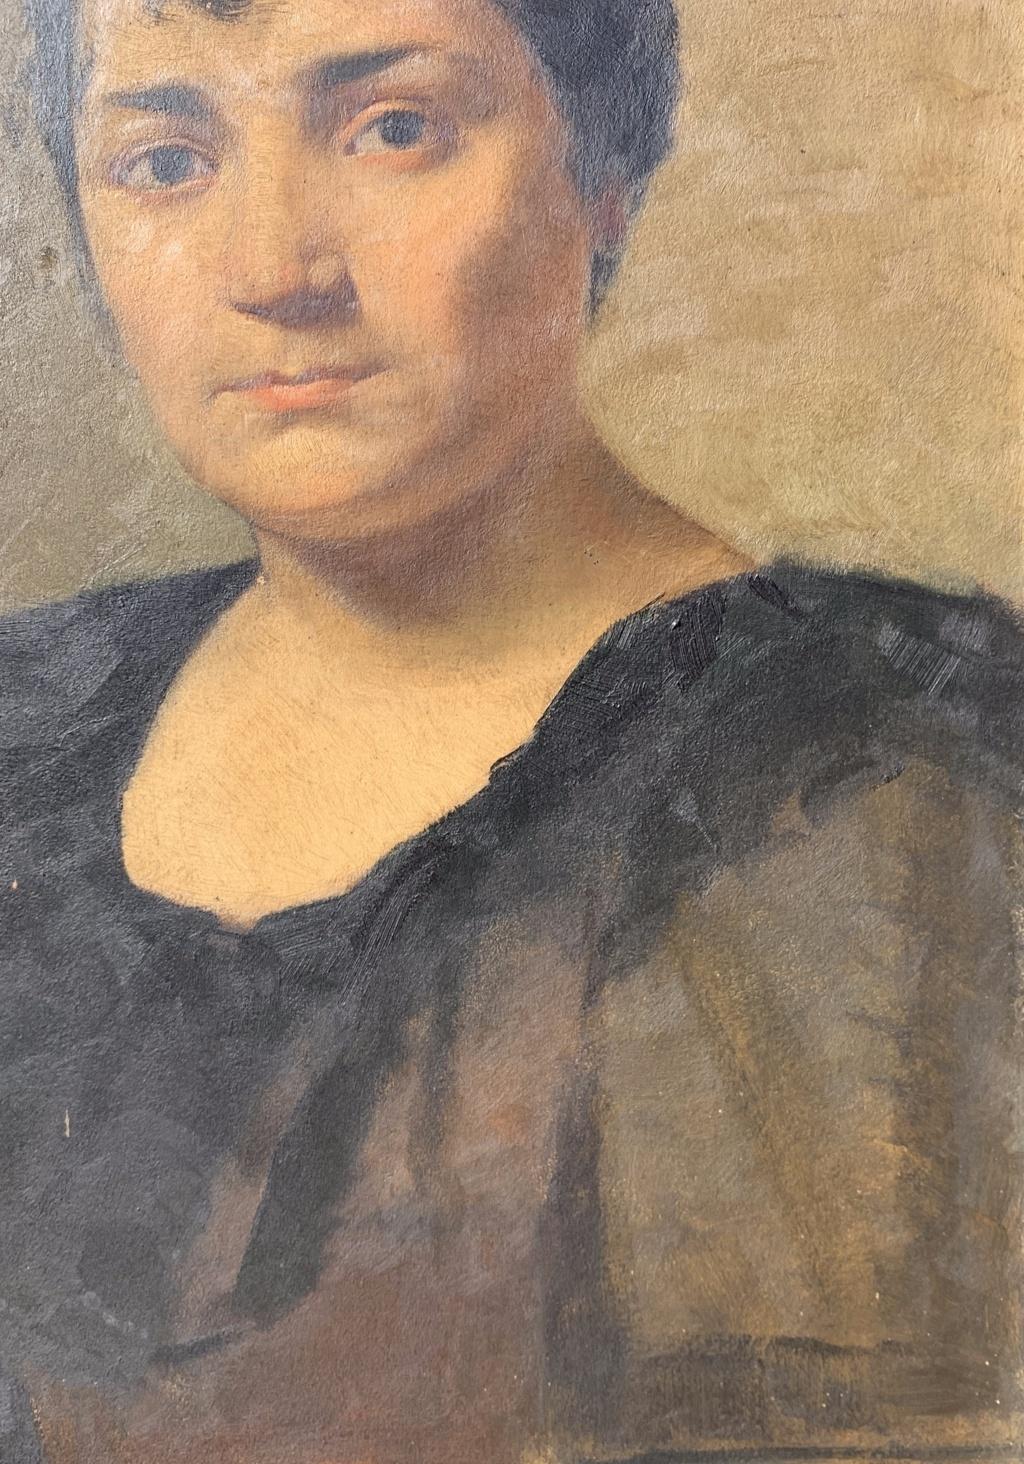 Italienischer Maler (19.-20. Jahrhundert) - Porträt eines Mädchens.

56 x 35 cm ohne Rahmen, 69 x 49 cm mit Rahmen.

Antikes Ölgemälde auf Karton, in einem Holzrahmen (einige Risse).

Zustandsbericht: Guter Erhaltungszustand der Bildoberfläche, es